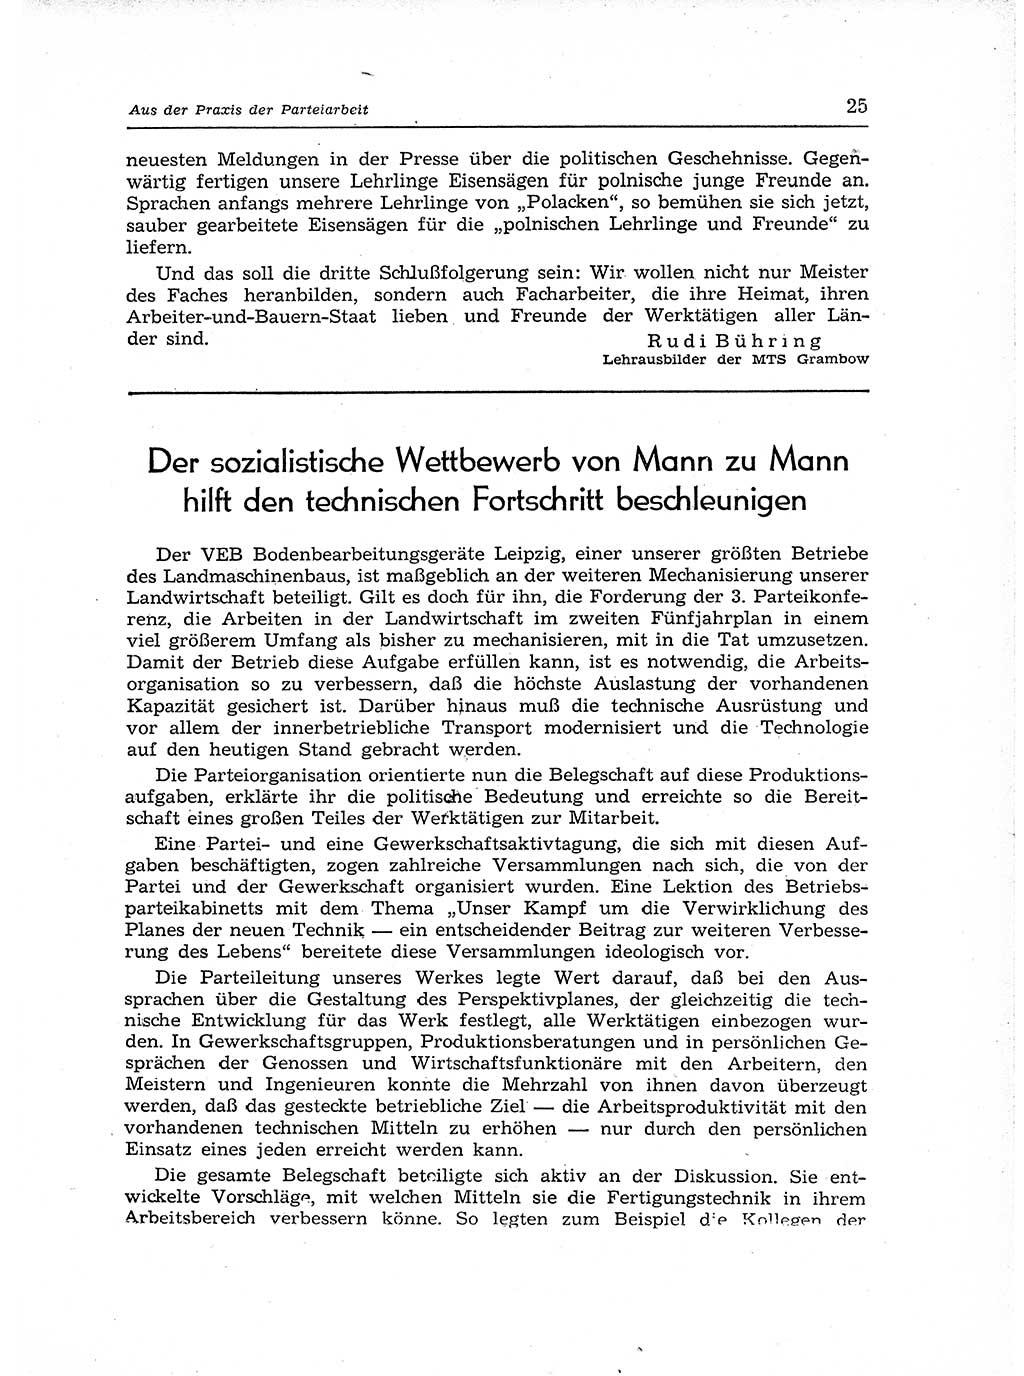 Neuer Weg (NW), Organ des Zentralkomitees (ZK) der SED (Sozialistische Einheitspartei Deutschlands) für Fragen des Parteiaufbaus und des Parteilebens, 12. Jahrgang [Deutsche Demokratische Republik (DDR)] 1957, Seite 25 (NW ZK SED DDR 1957, S. 25)